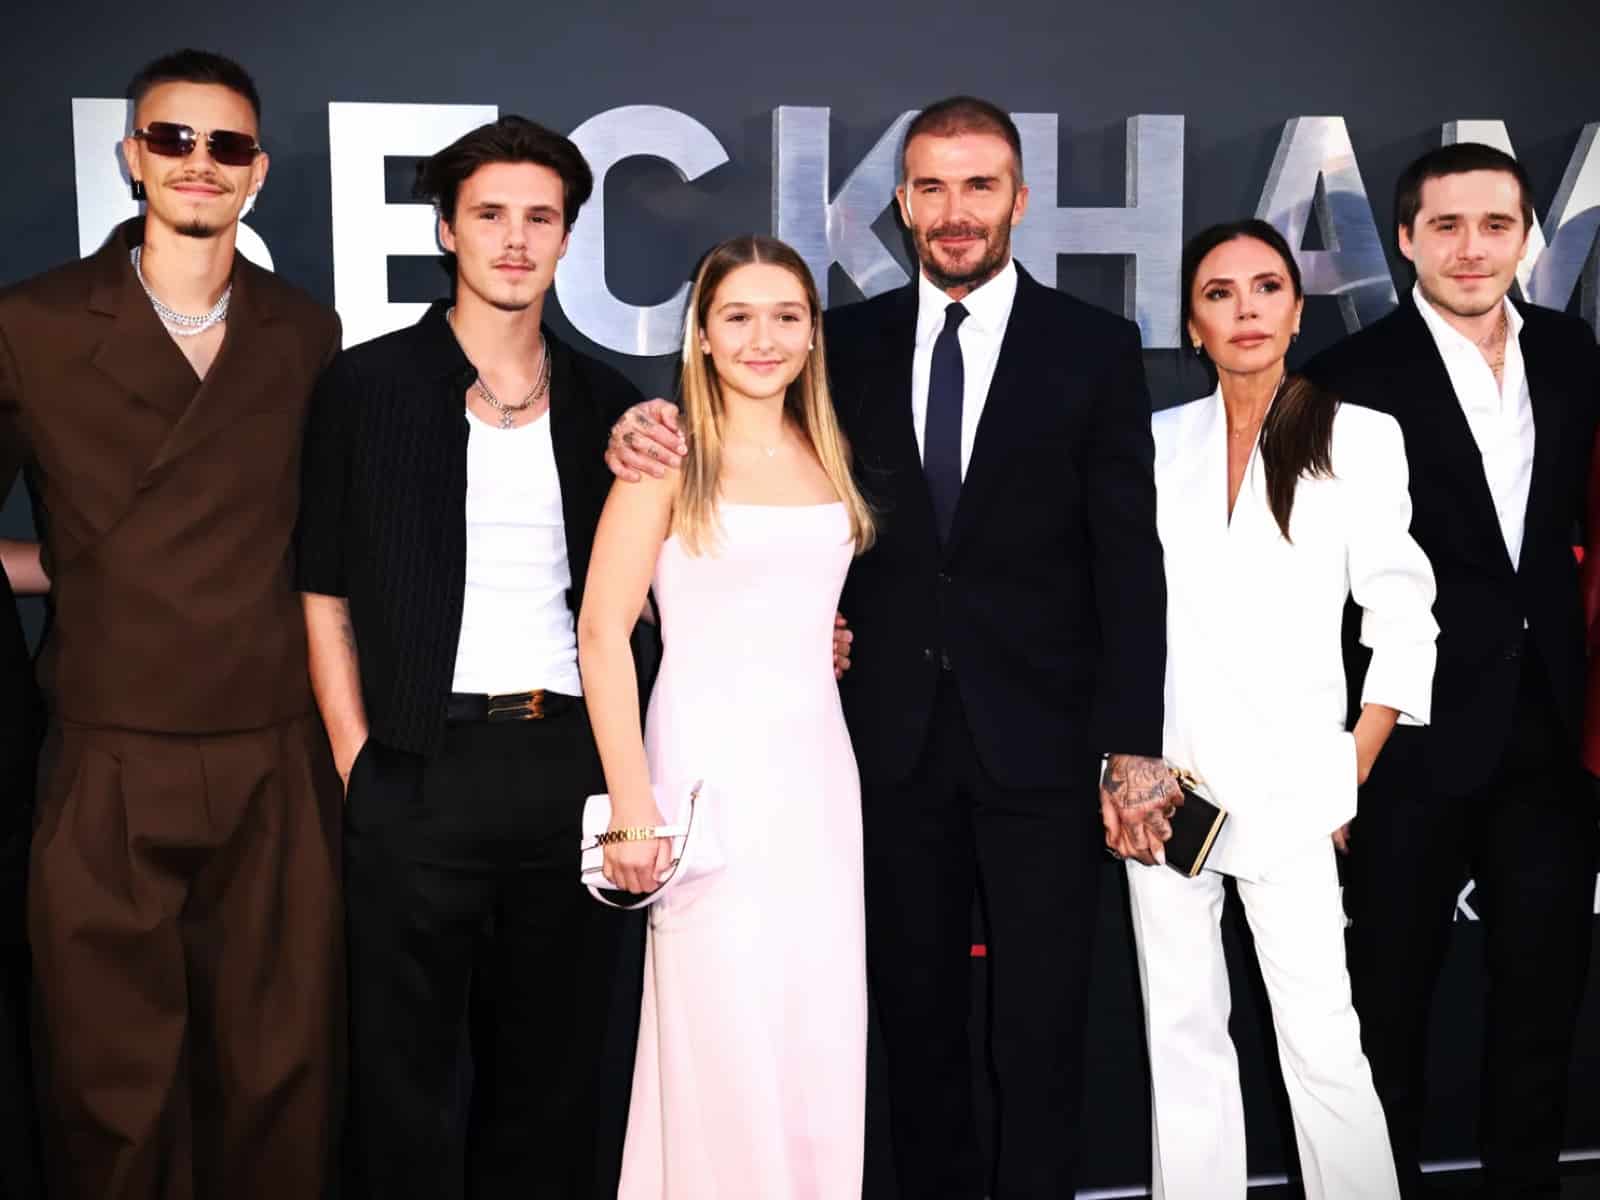 The Beckhams Pressemeldung Victoria Beckham Netflix Dokumentation